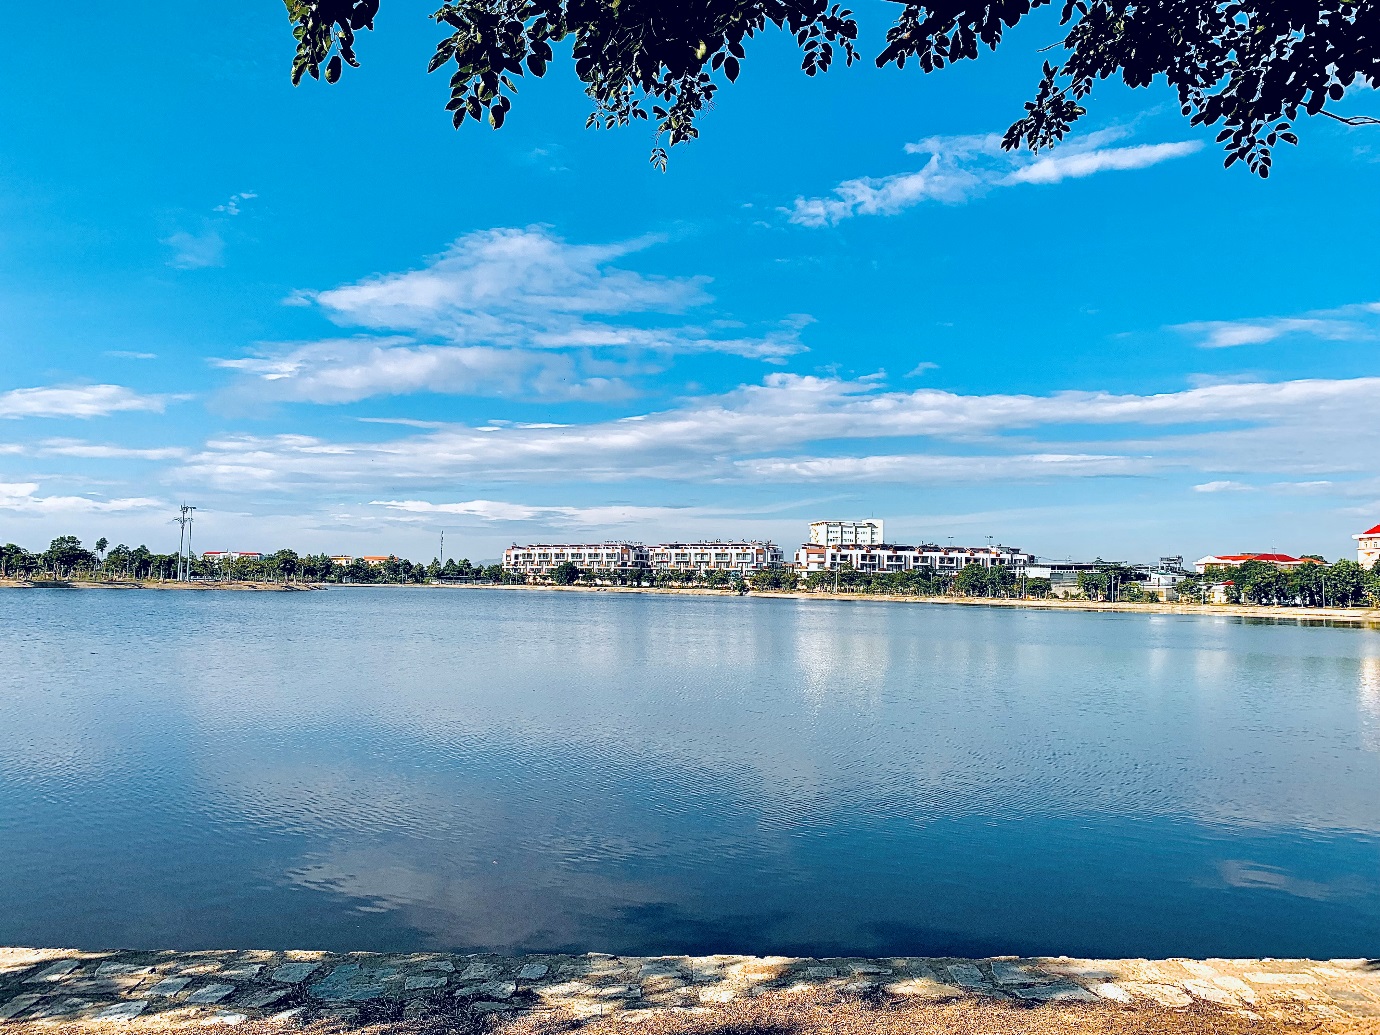 Dạo bước bên hồ Điều Hoà, tận hưởng không khí trong lành của thành phố biển Phan Rang-Tháp Chàm